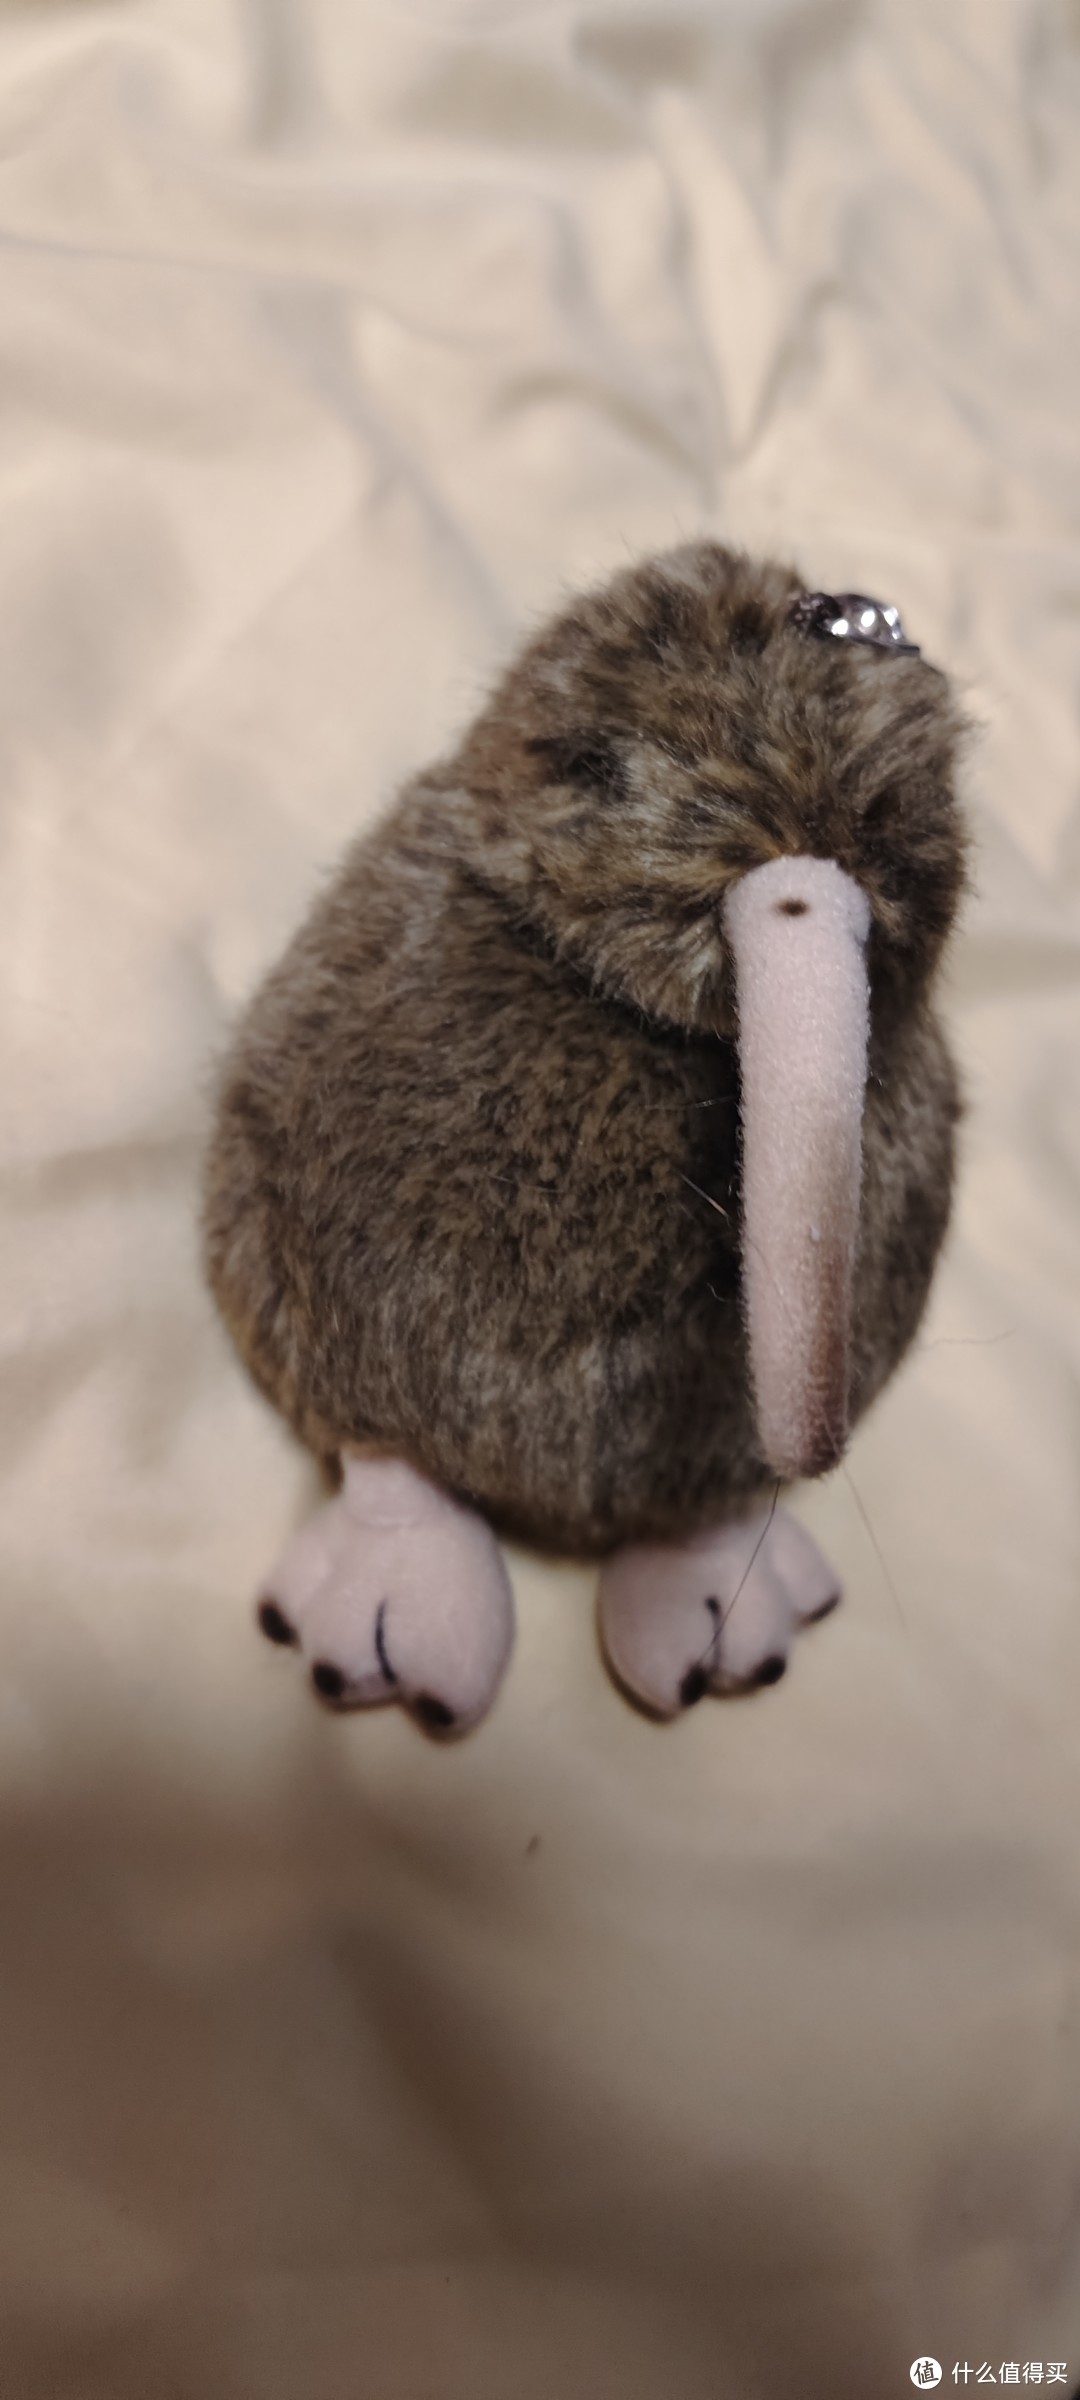 澳大利亚国鸟/喵星人的新玩具/kiwi几维鸟毛绒玩具  新西兰几维鸟钥匙扣 奇异鸟挂件 新西兰纪念